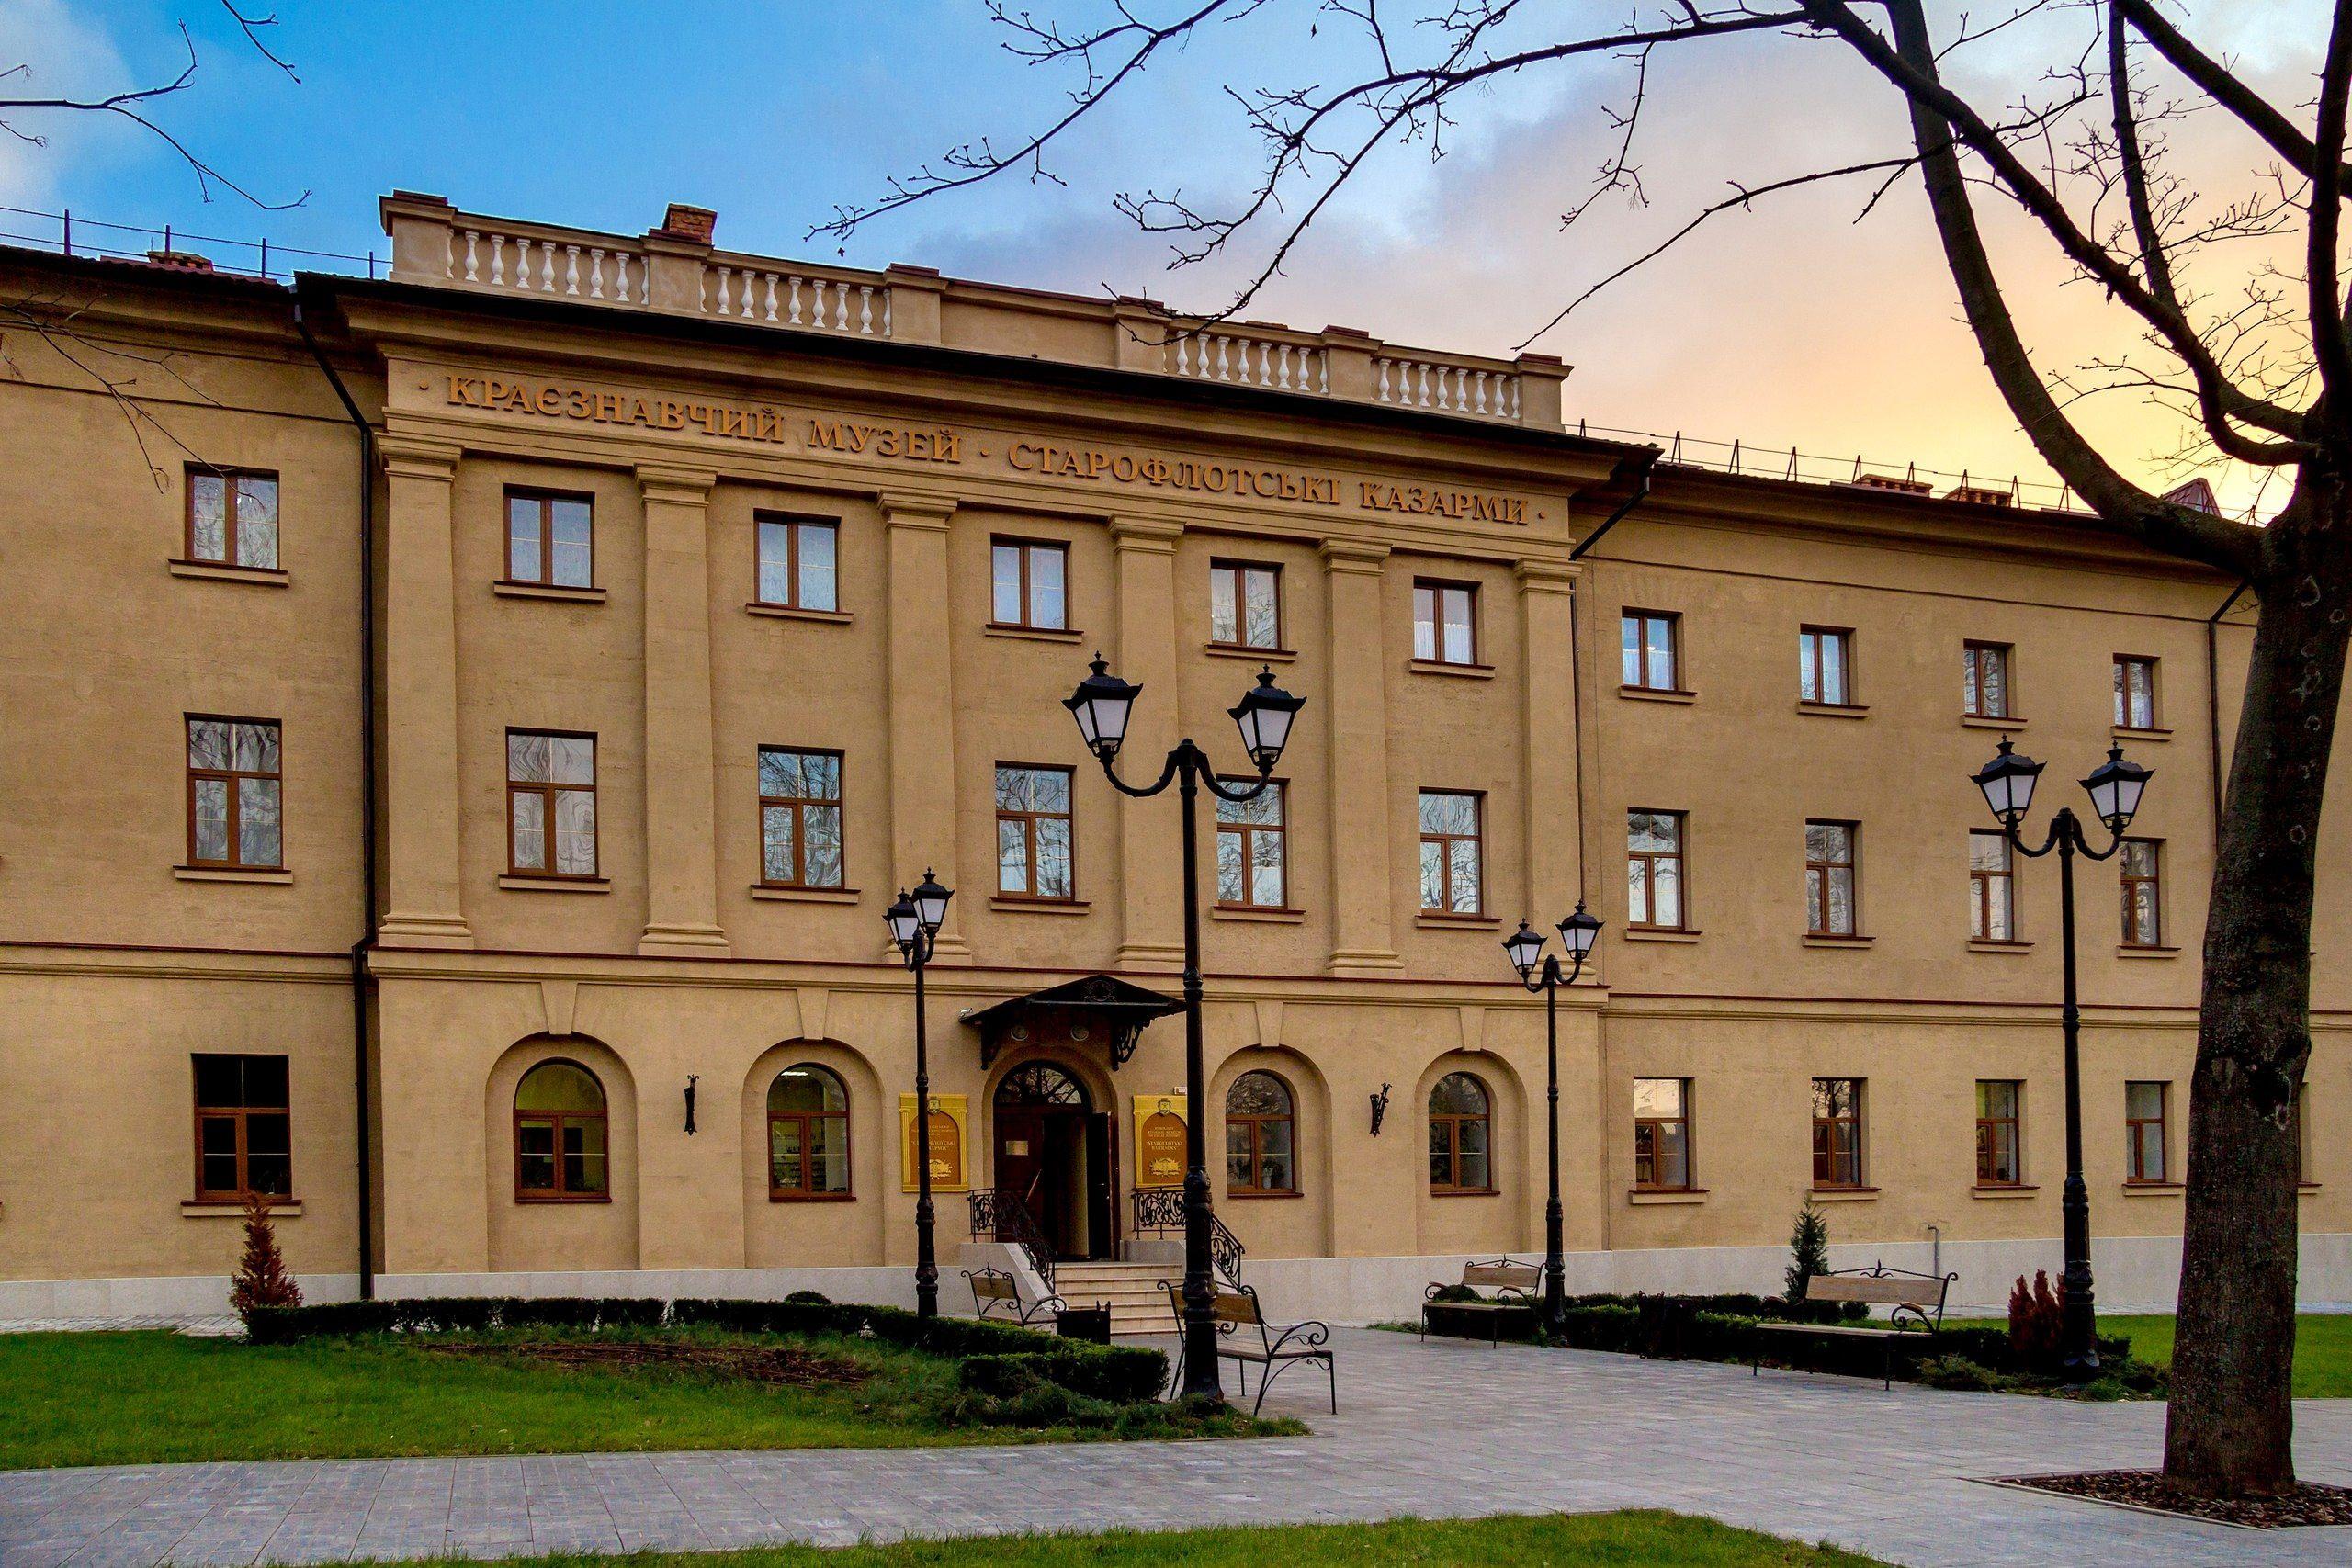 Музей Старофлотские казармы